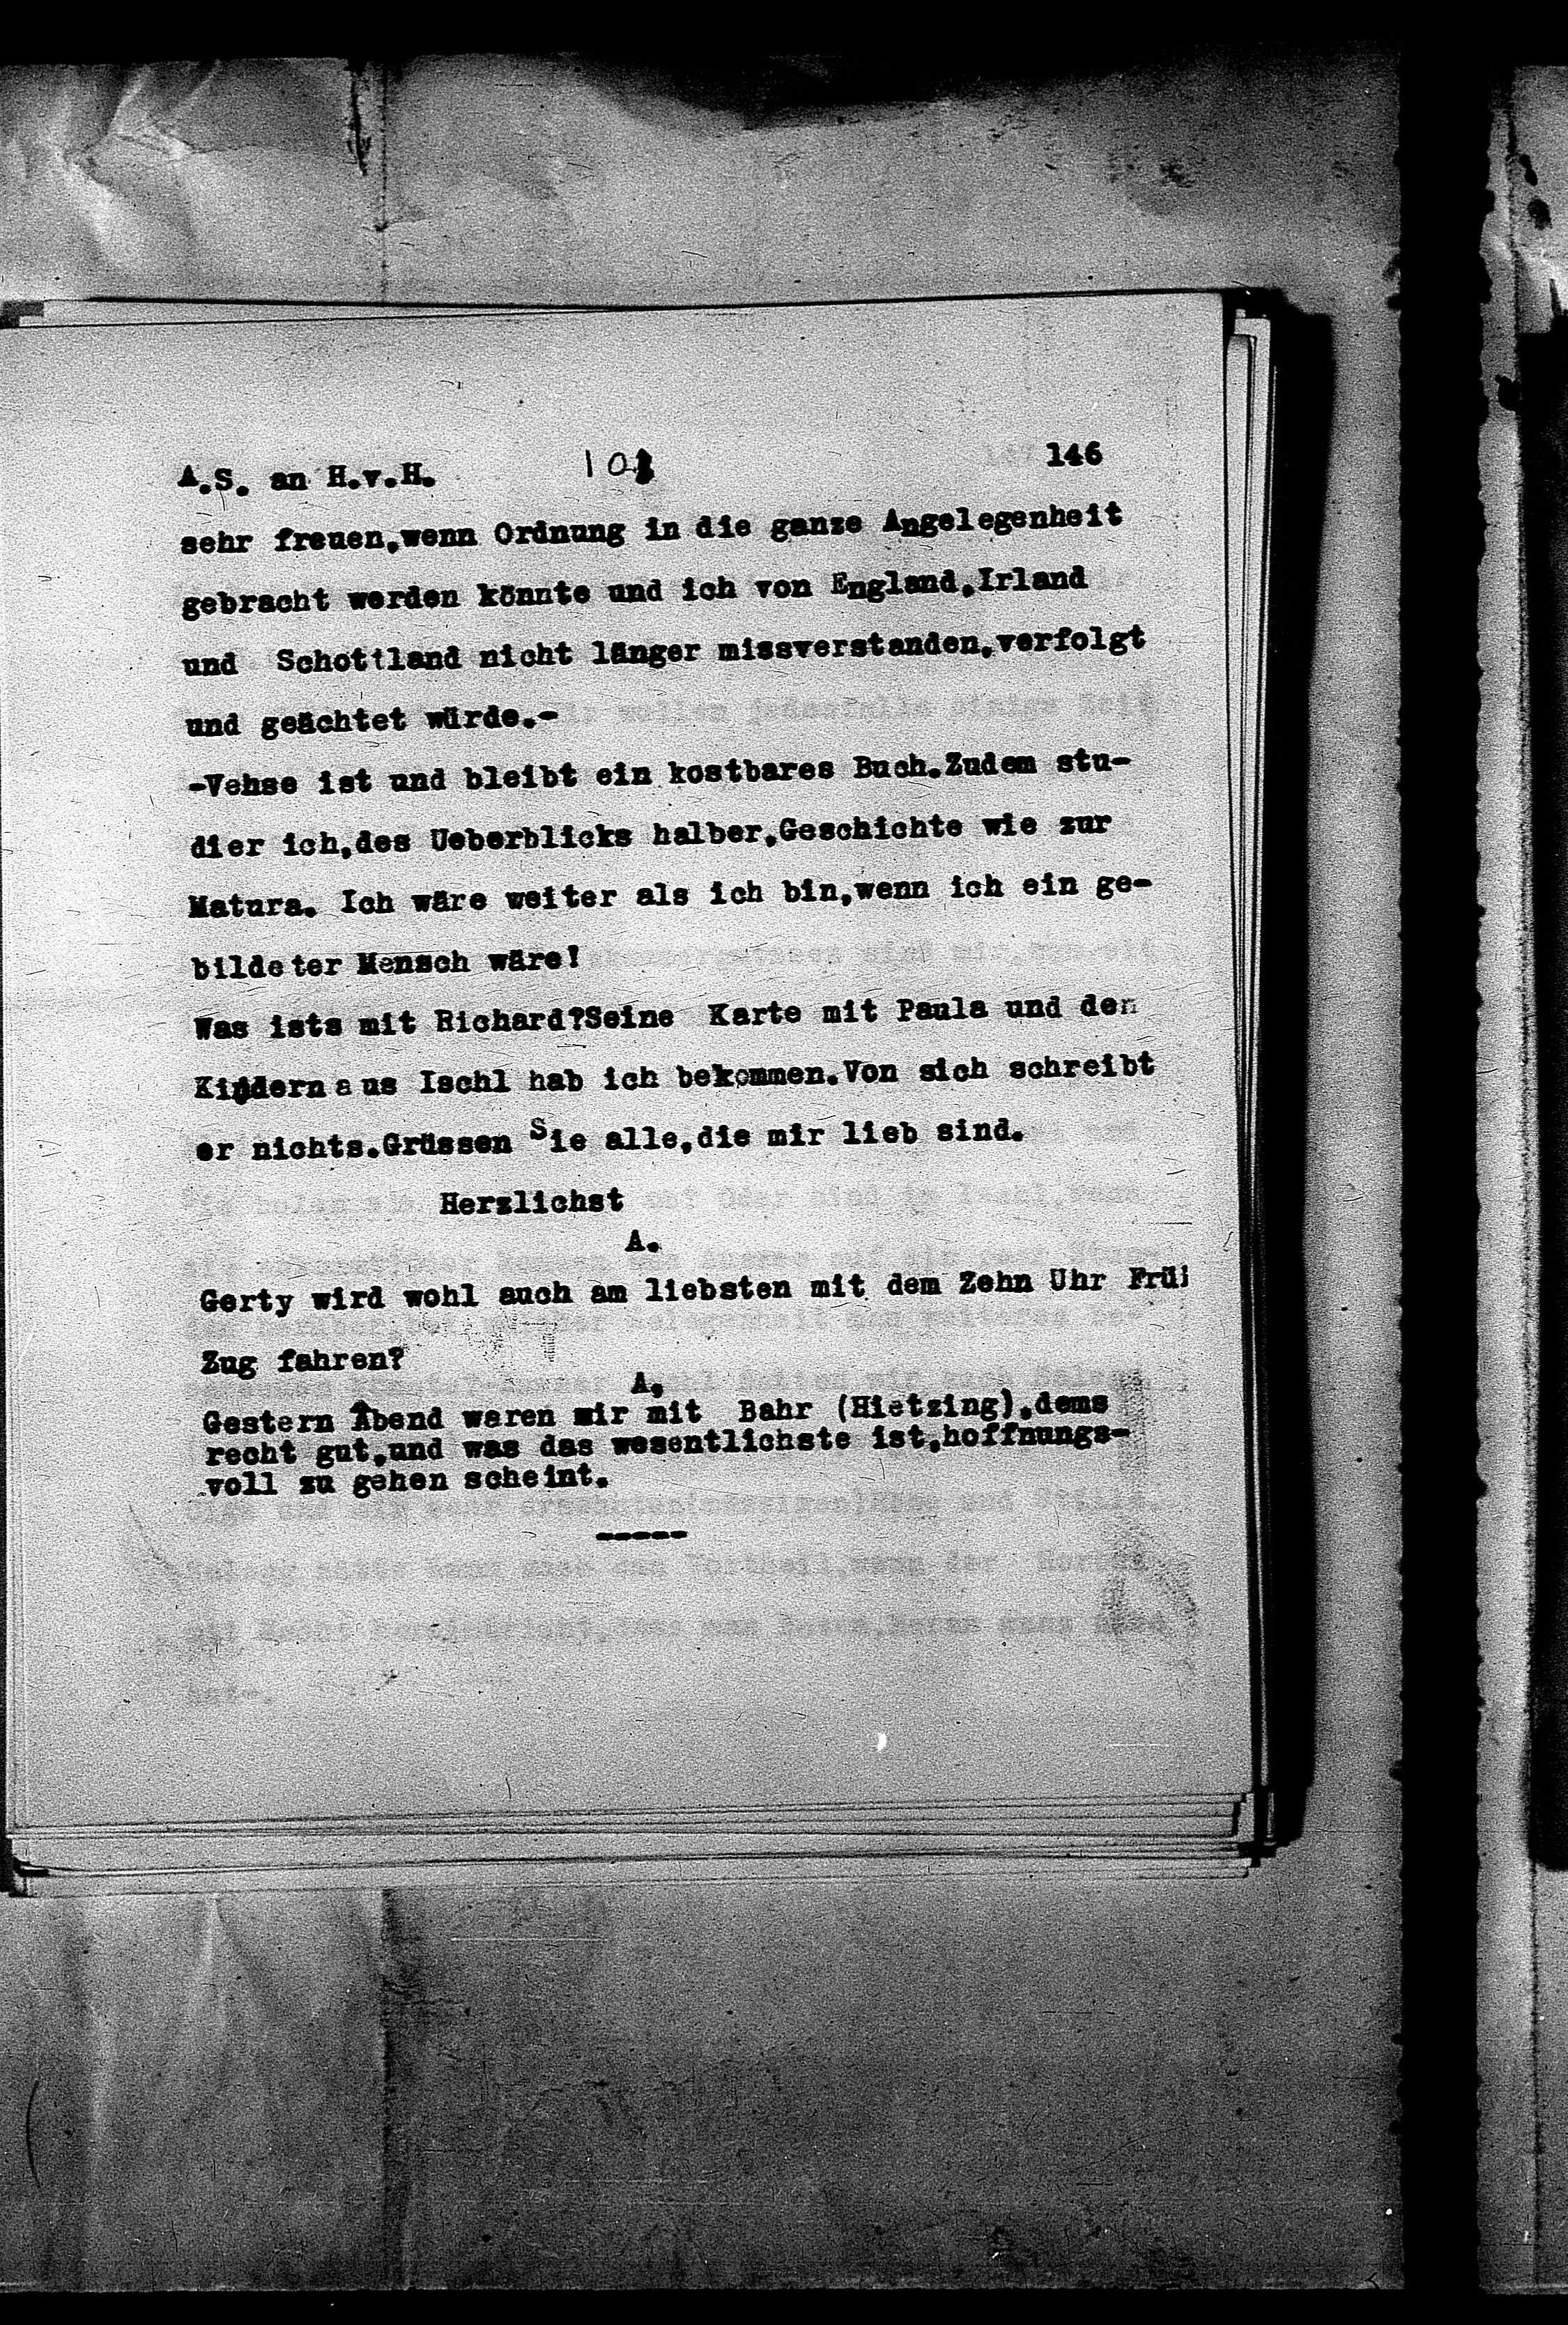 Vorschaubild für Hofmannsthal, Hugo von_AS an HvH Abschrift, HvH an AS, Originale (Mikrofilm 38), Seite 152